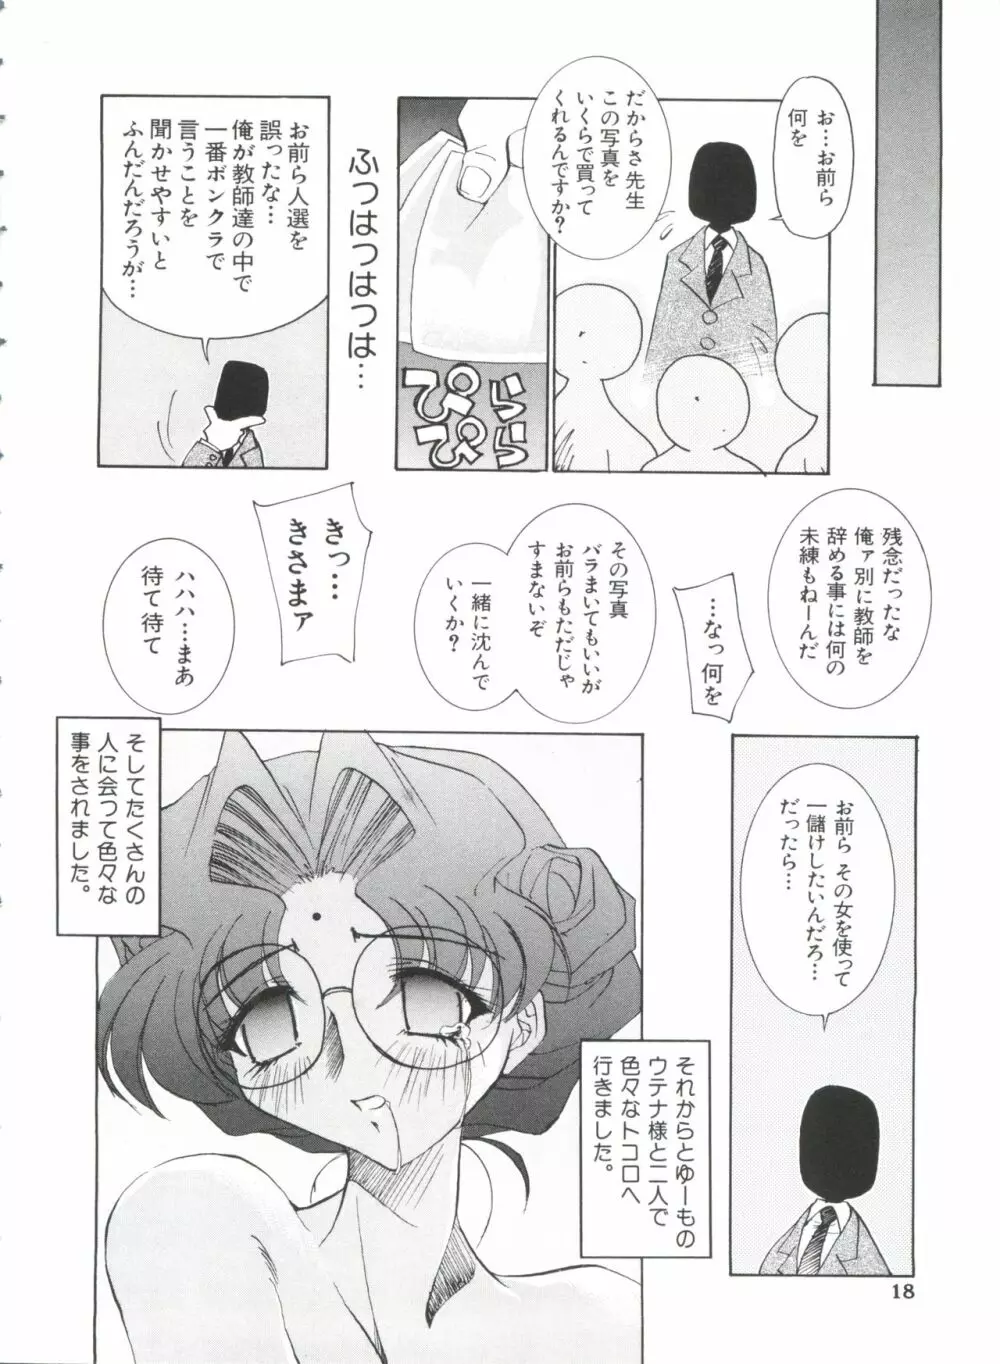 ぱろぱろ王国 Vol.1 19ページ